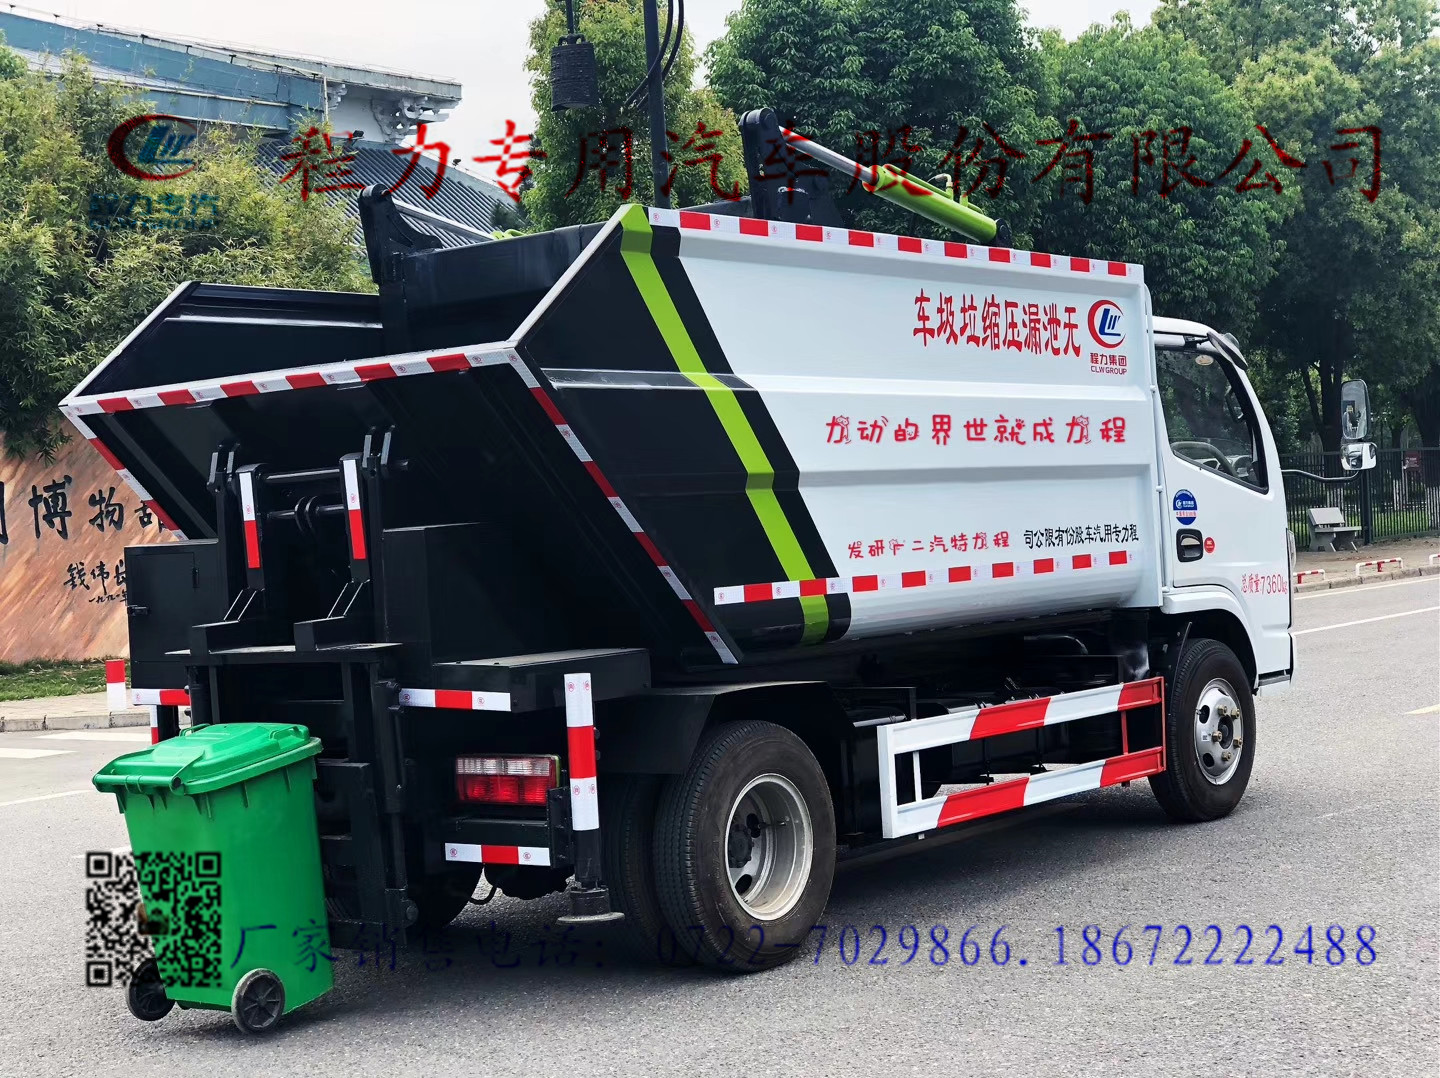 白背景中孤立的垃圾车玩具模型 库存图片. 图片 包括有 查出, 设计, 卡车, 生态, 背包, 容器, 回收 - 157834441